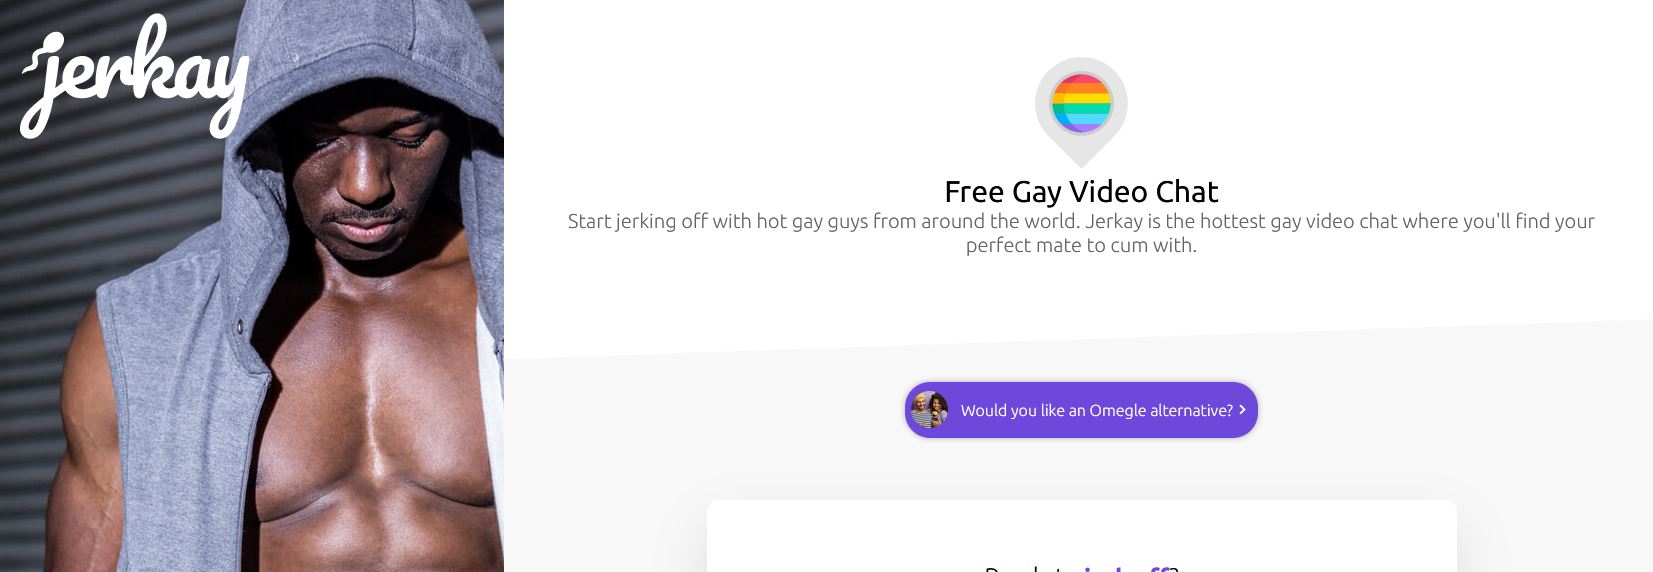 Uw gids voor online intimiteit, waarbij platforms zoals Jerkay worden geëvalueerd voor homosekschatten